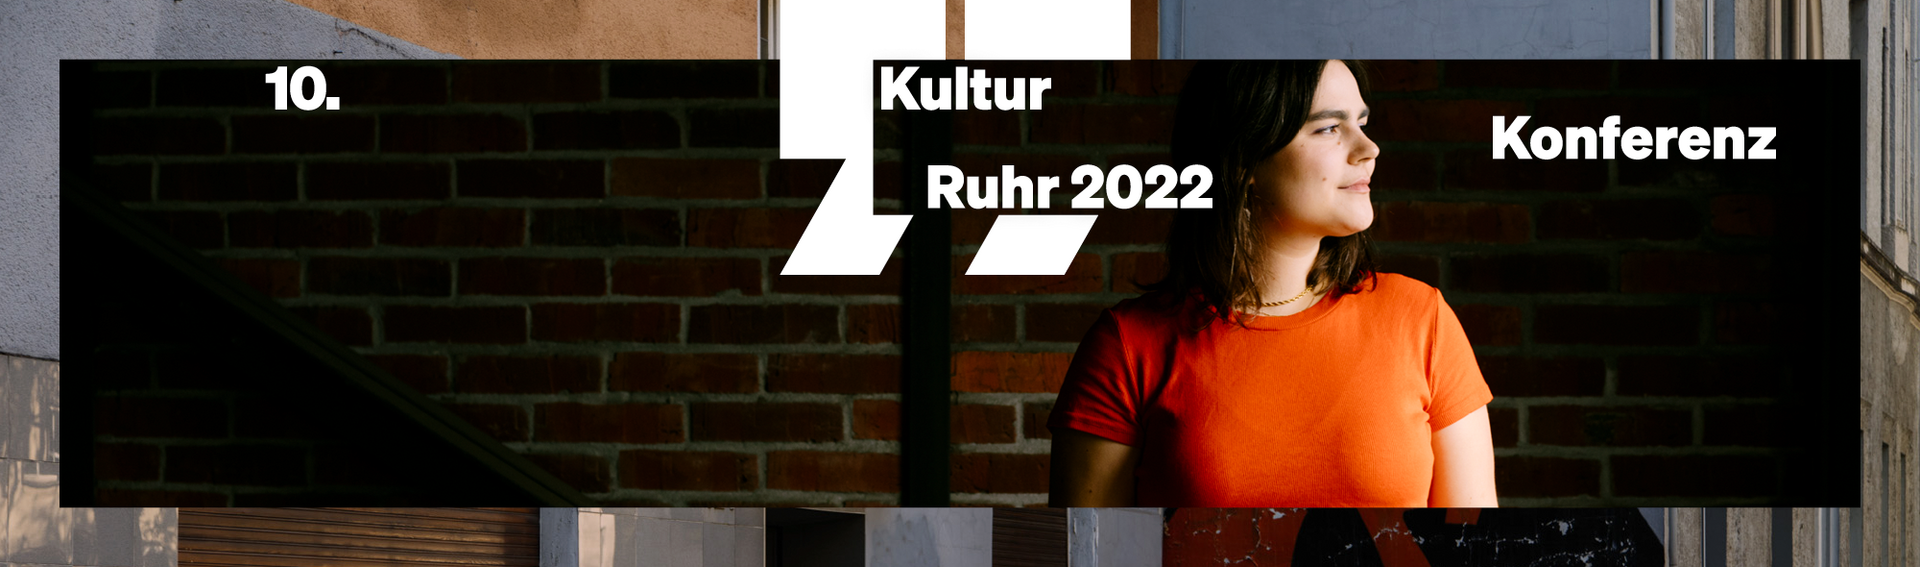 Frau mit orangefarbenem Shirt vor dunklem Hintergrund. Keyvisual "10. Kulturkonferenz Ruhr" eingebunden. eingebunden